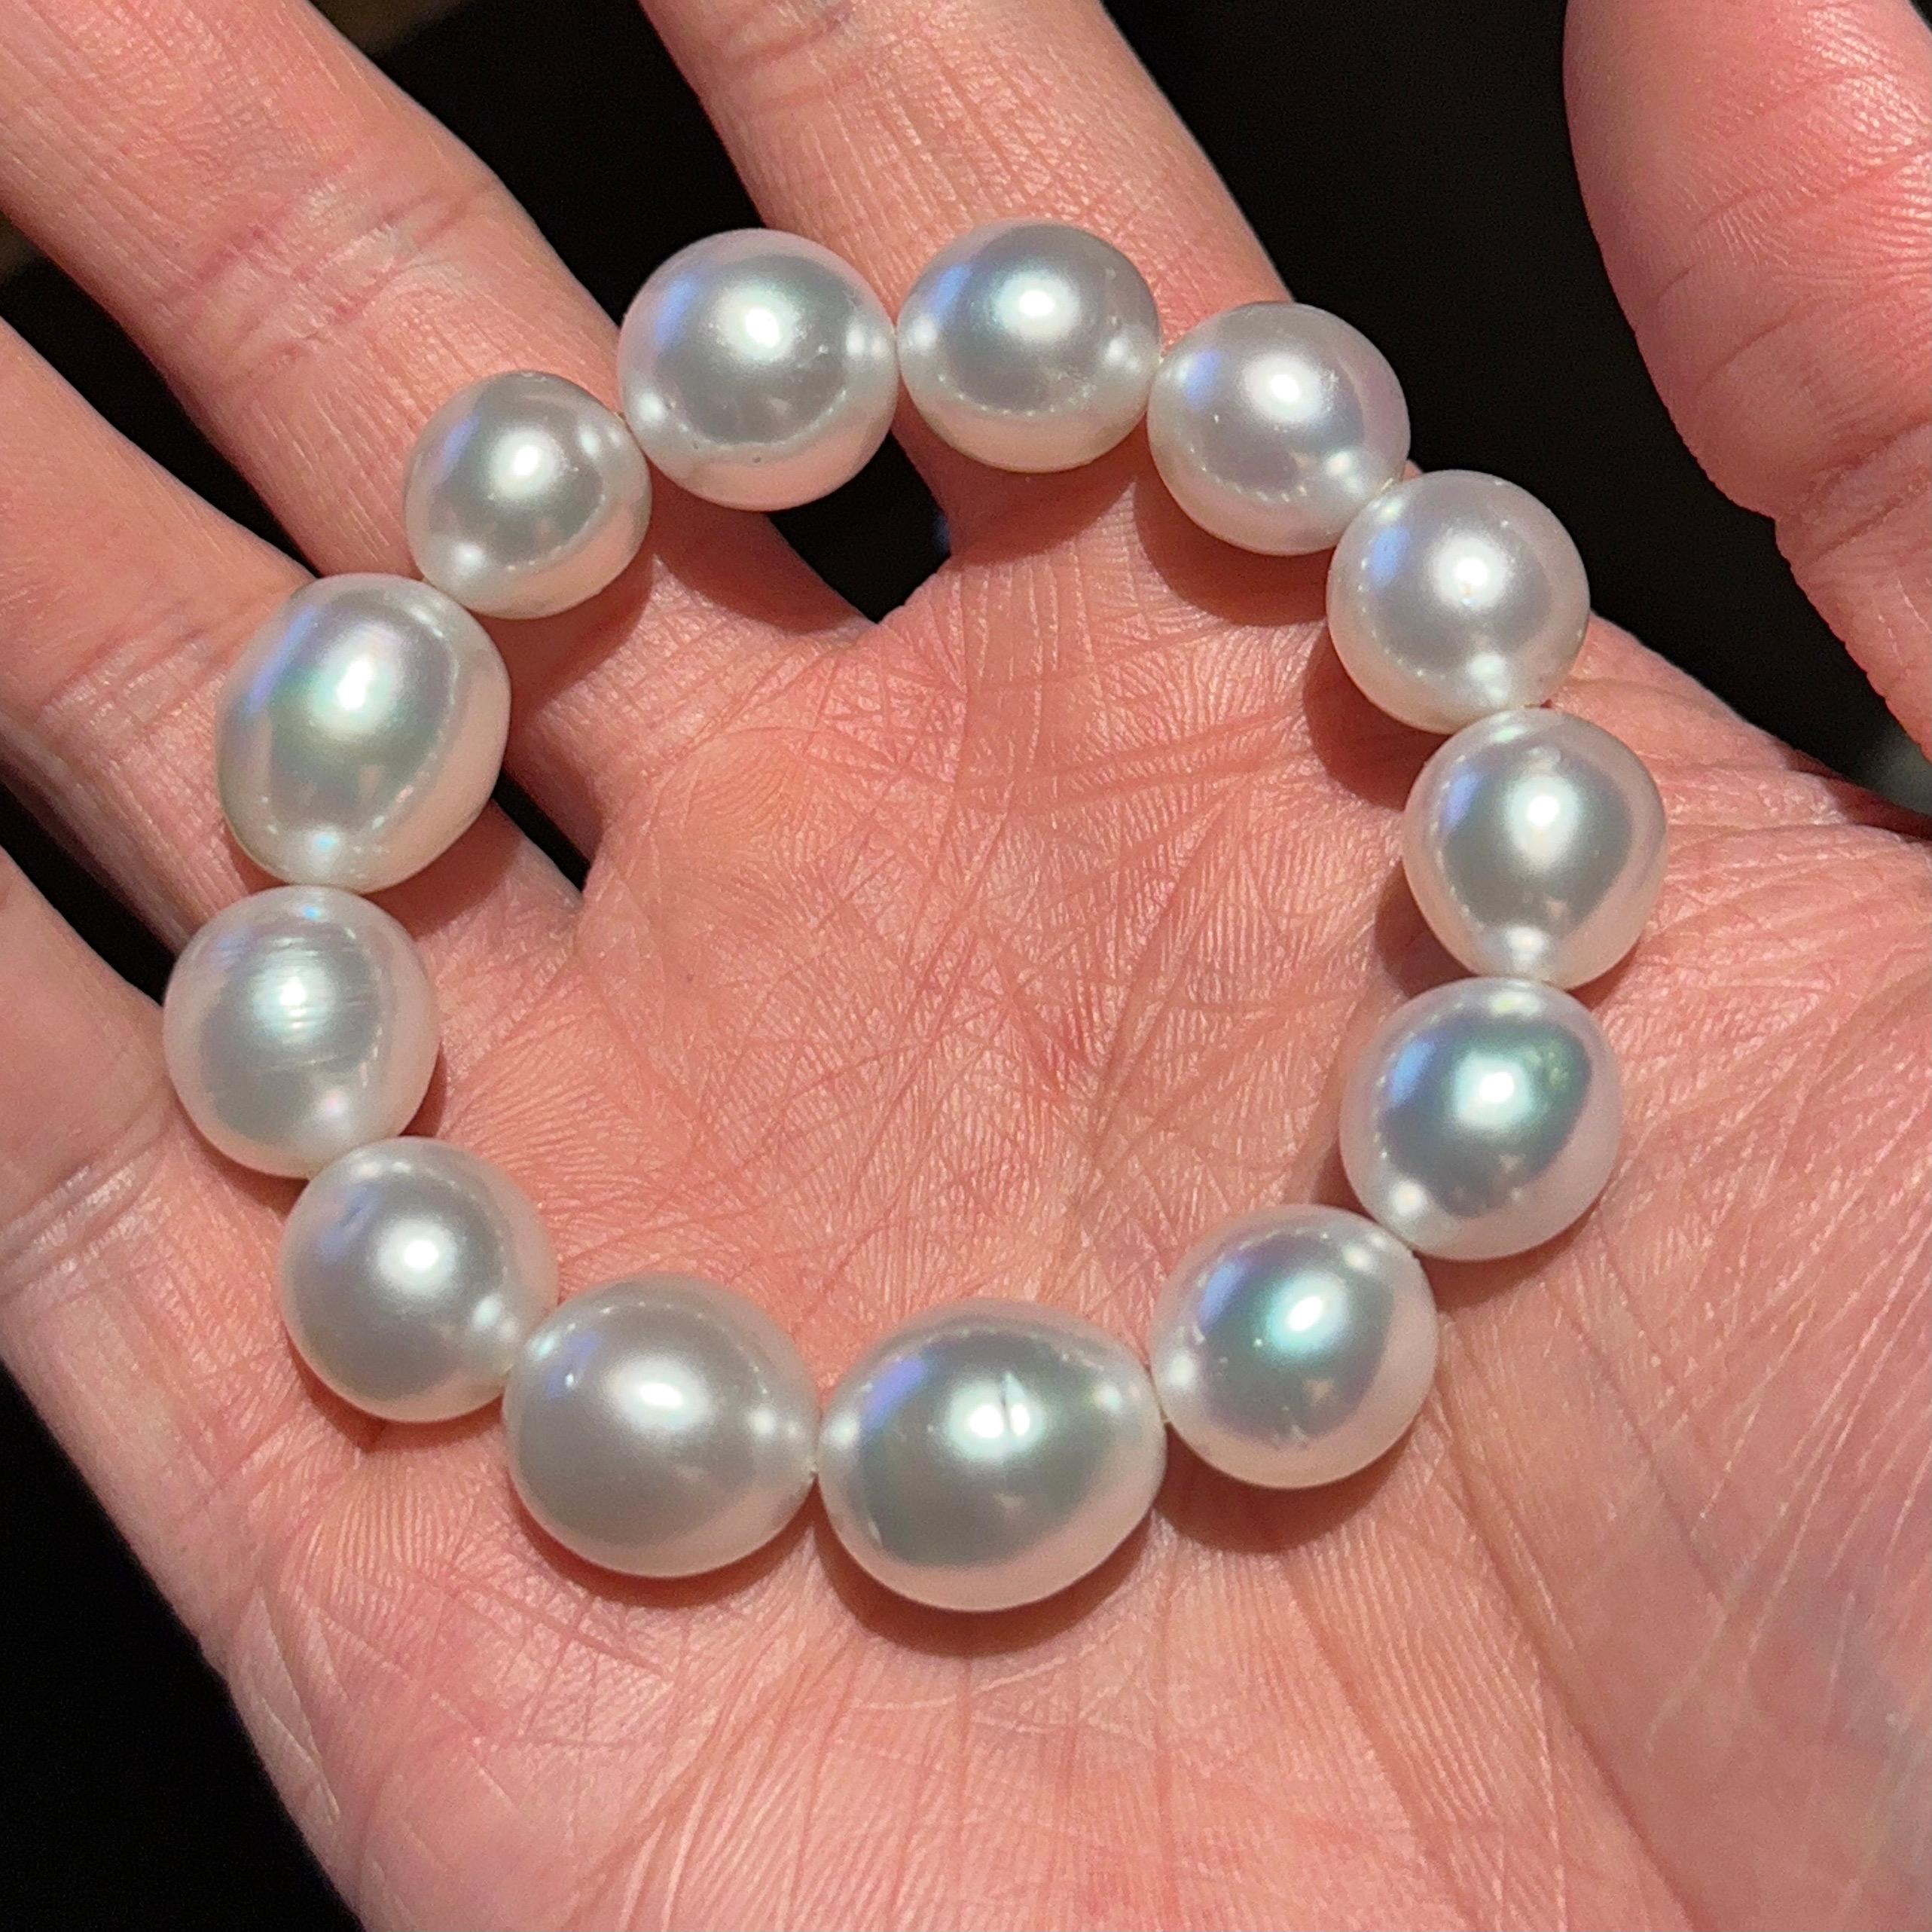 Bracelet de perles blanches des mers du Sud australiennes 

Whiting se compose de 13 perles de culture des mers du Sud de couleur blanche avec des reflets roses. Les perles sont d'un grand lustre. La couleur du corps est blanche avec des reflets